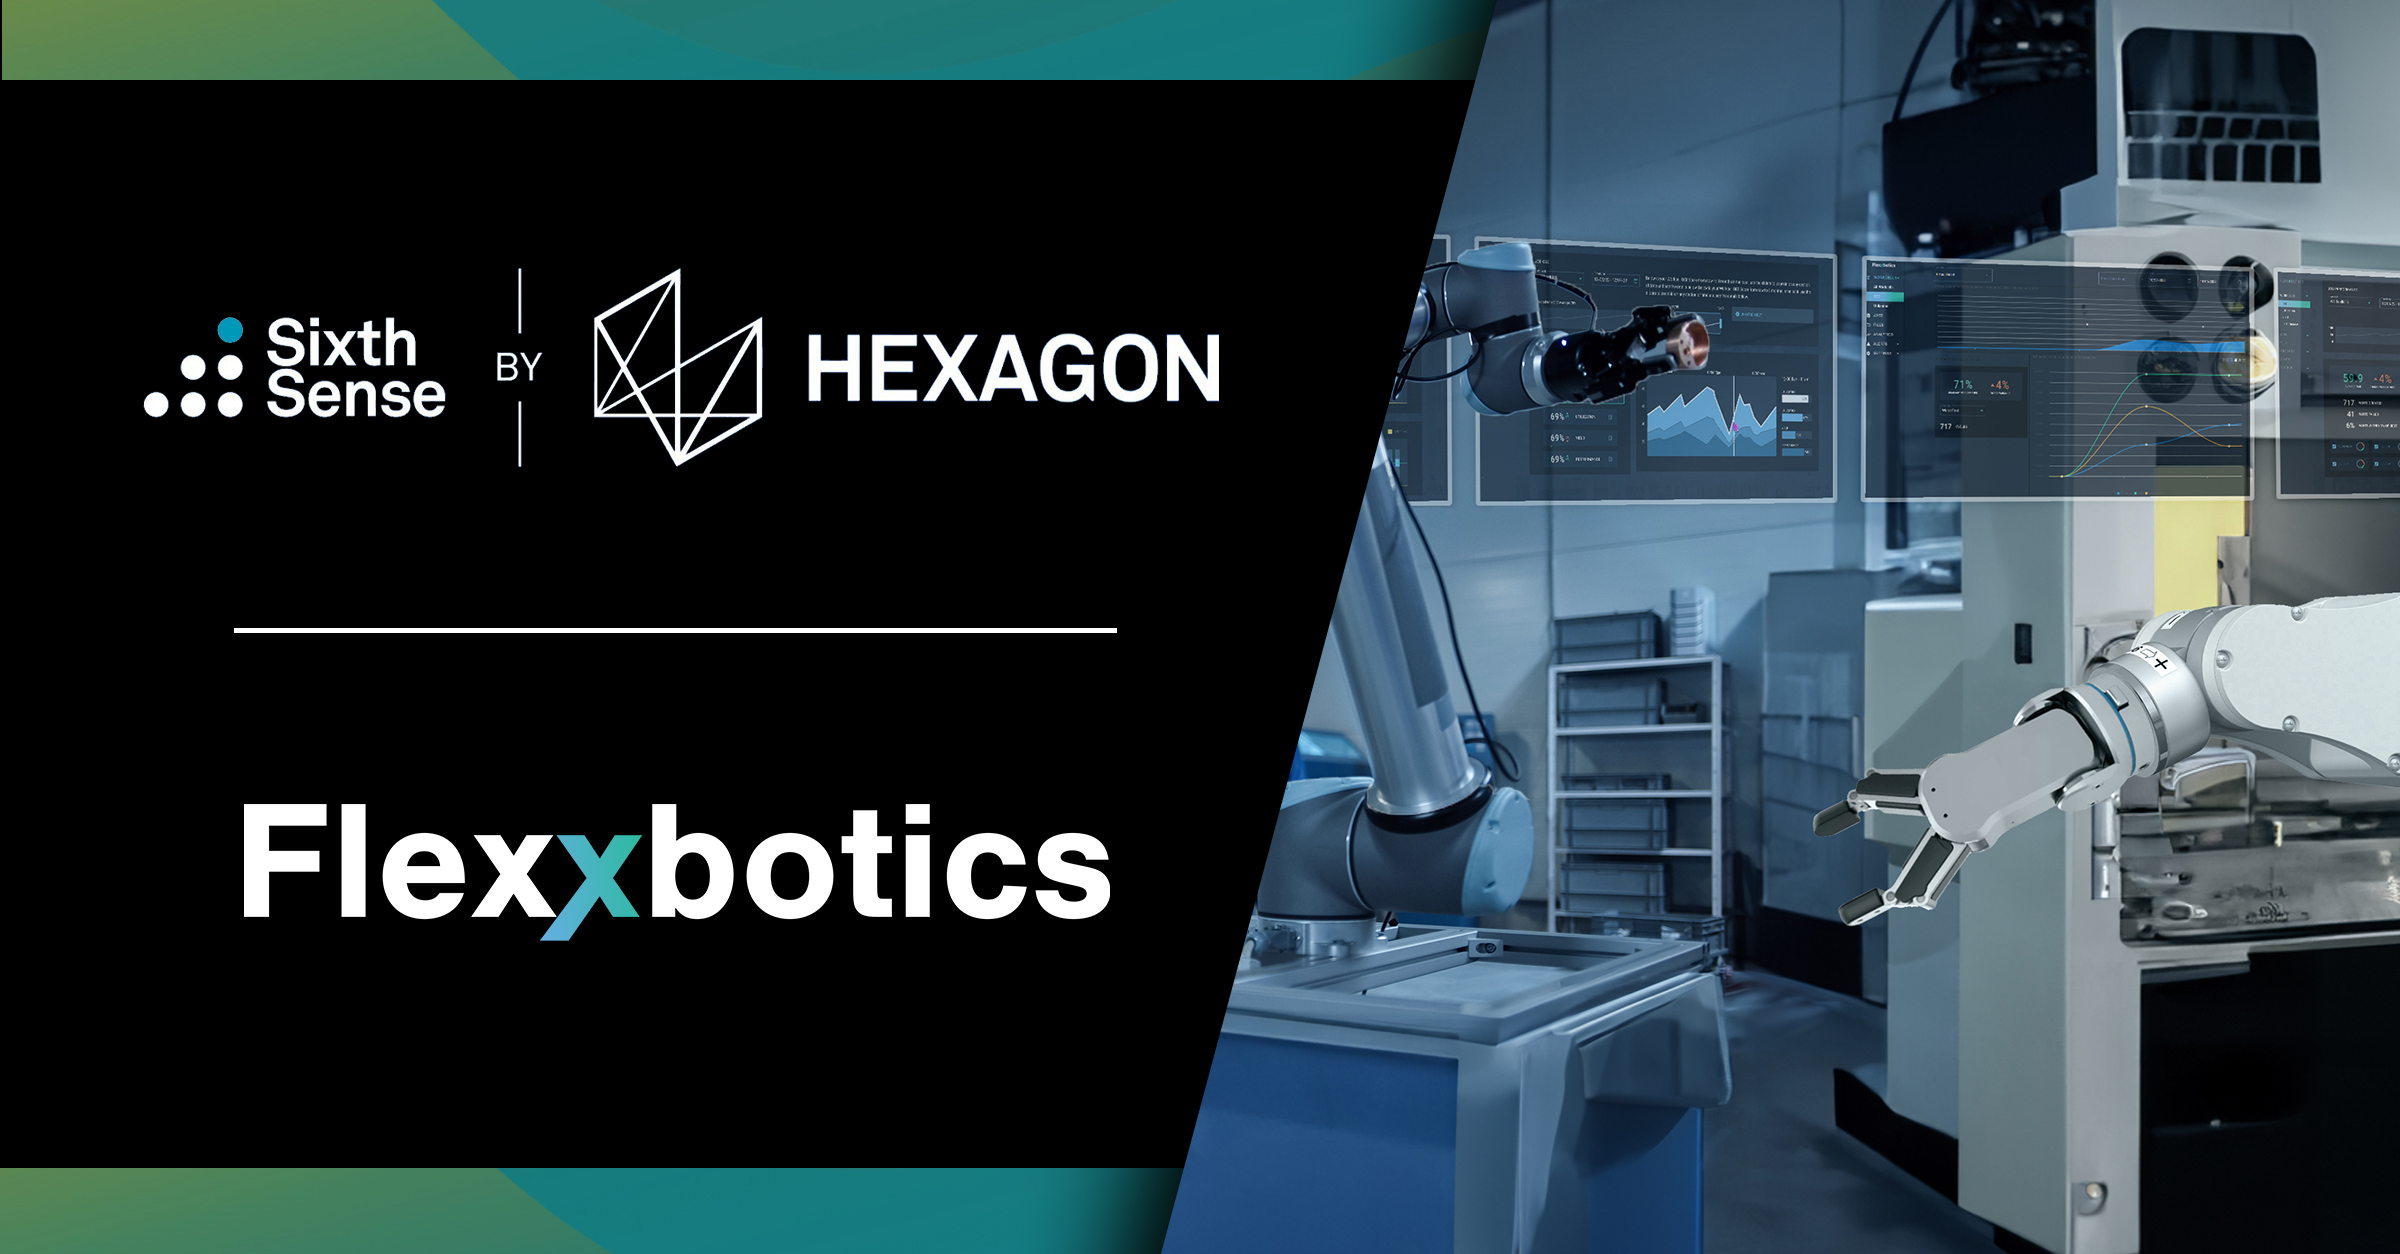 Flexxbotics Selected for Hexagon’s Sixth Sense